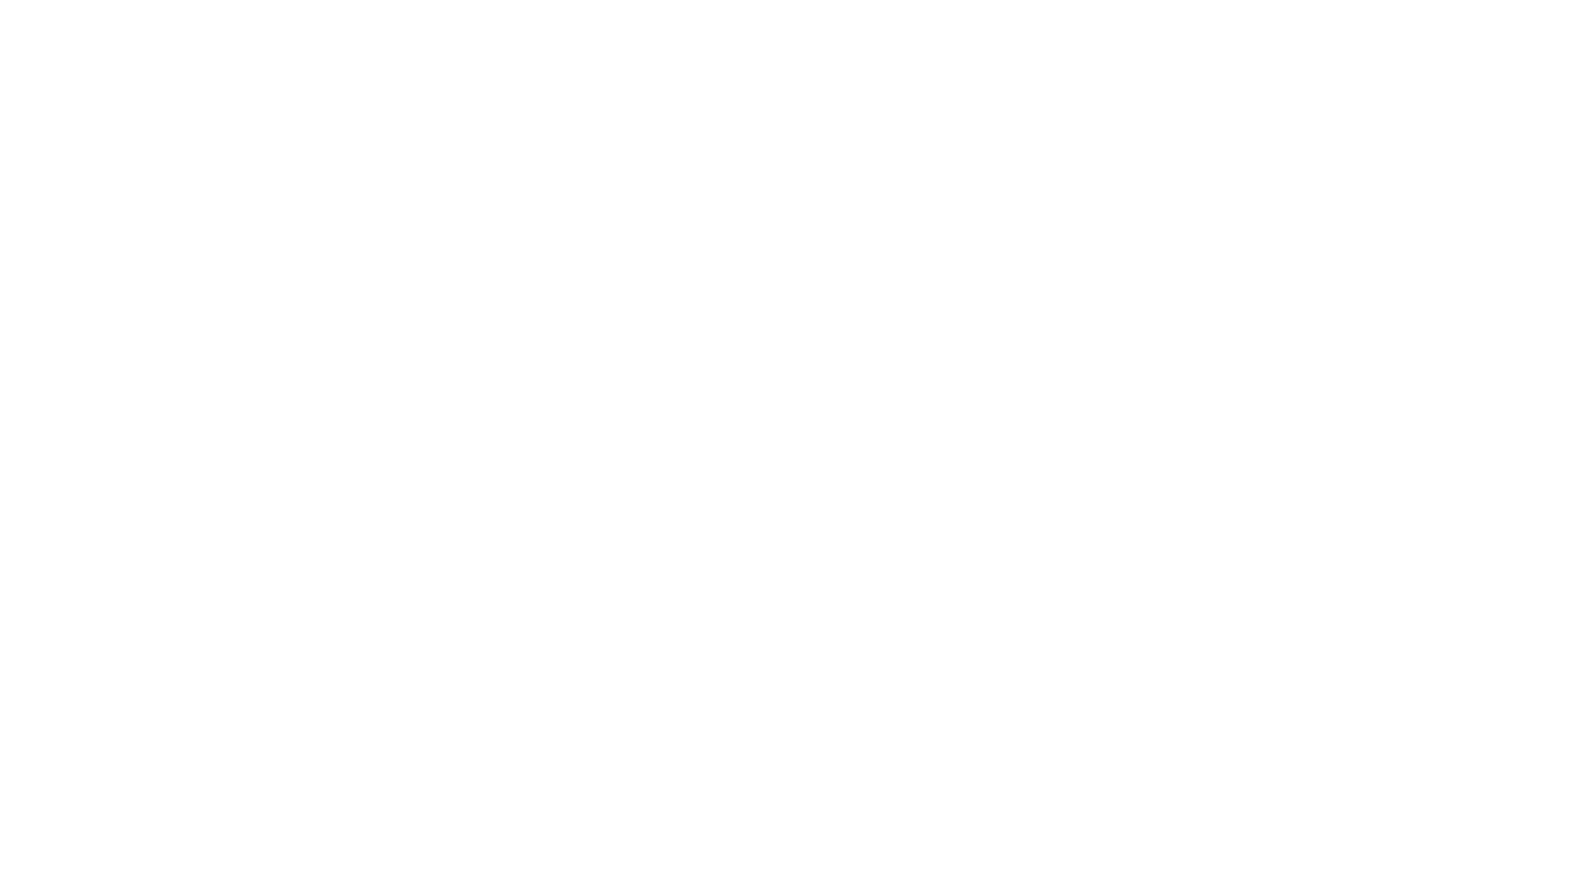 BAWAG Group logo large for dark backgrounds (transparent PNG)